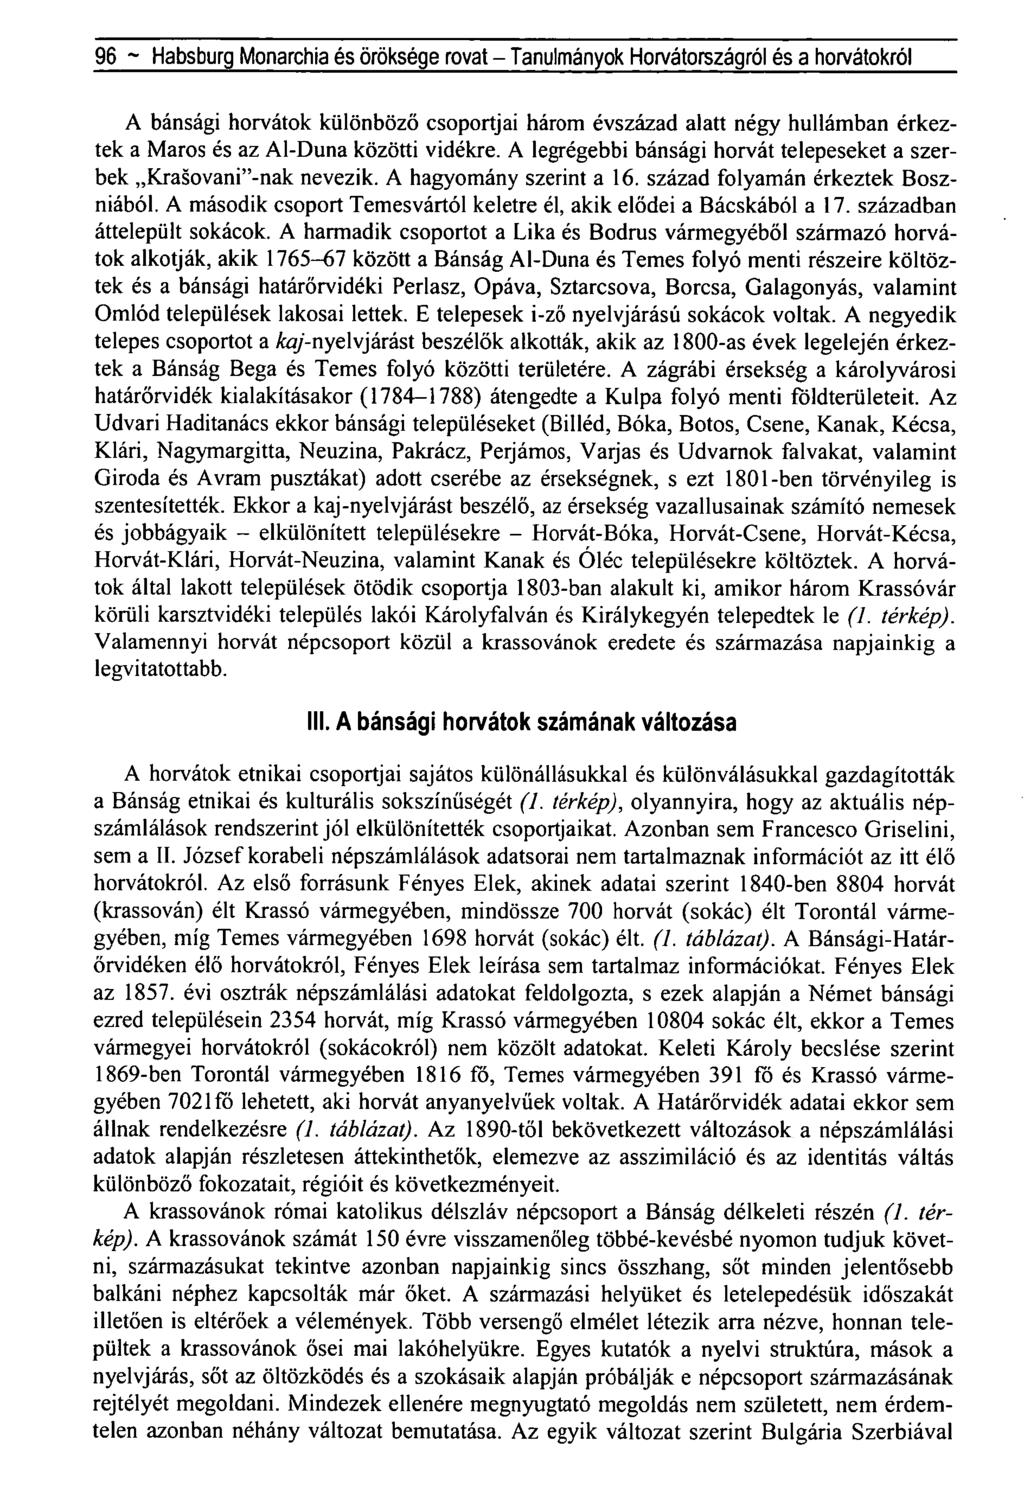 96 - Habsburg Monarchia és öröksége rovat - Tanulmányok Horvátországról és a horvátokról A bánsági horvátok különböző csoportjai három évszázad alatt négy hullámban érkeztek a Maros és az Al-Duna